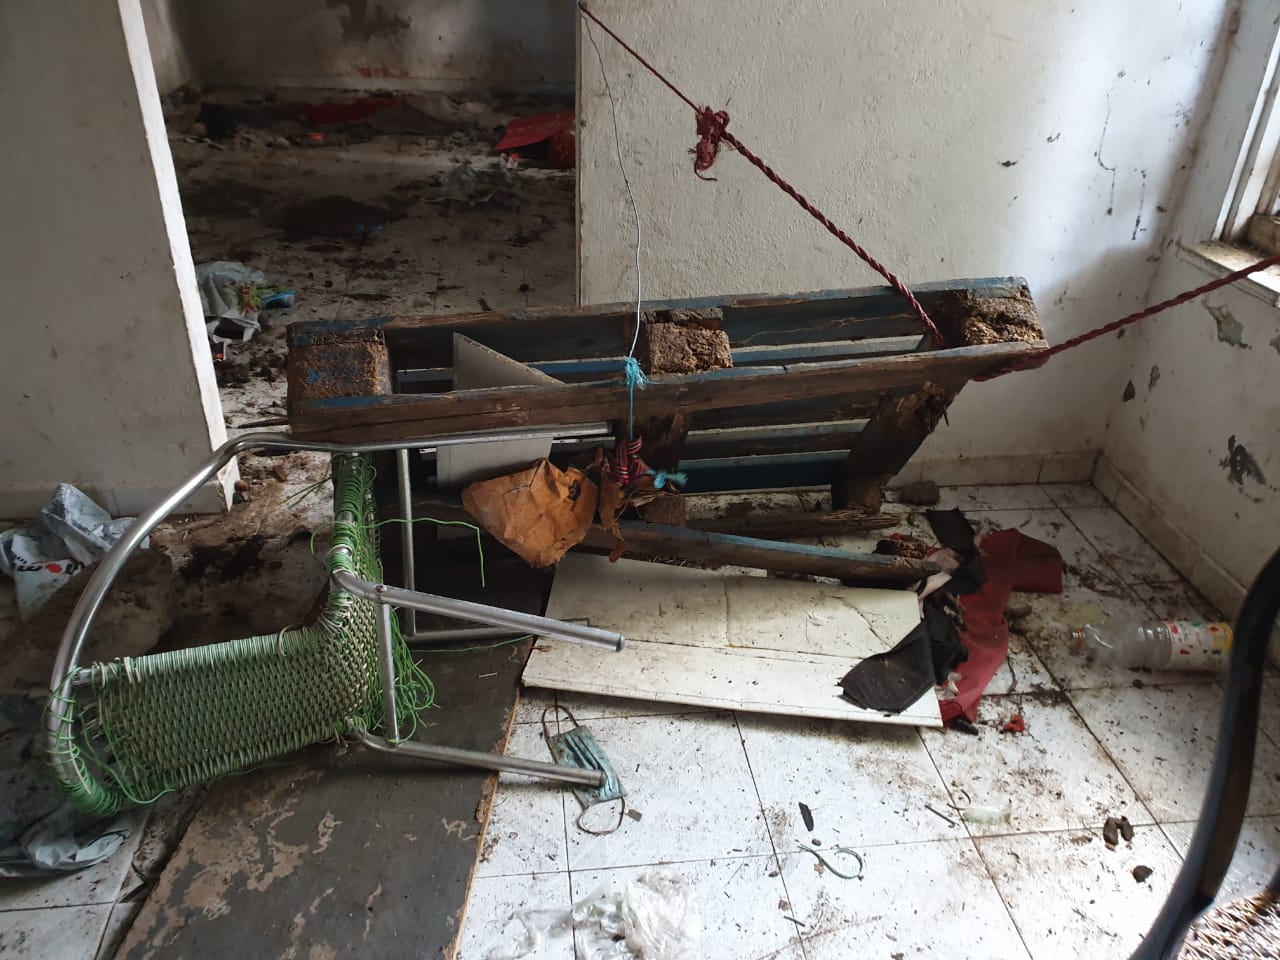 Saint-Denis : Un nouveau squat pour enfermer les chiens et un appareil de torture découverts